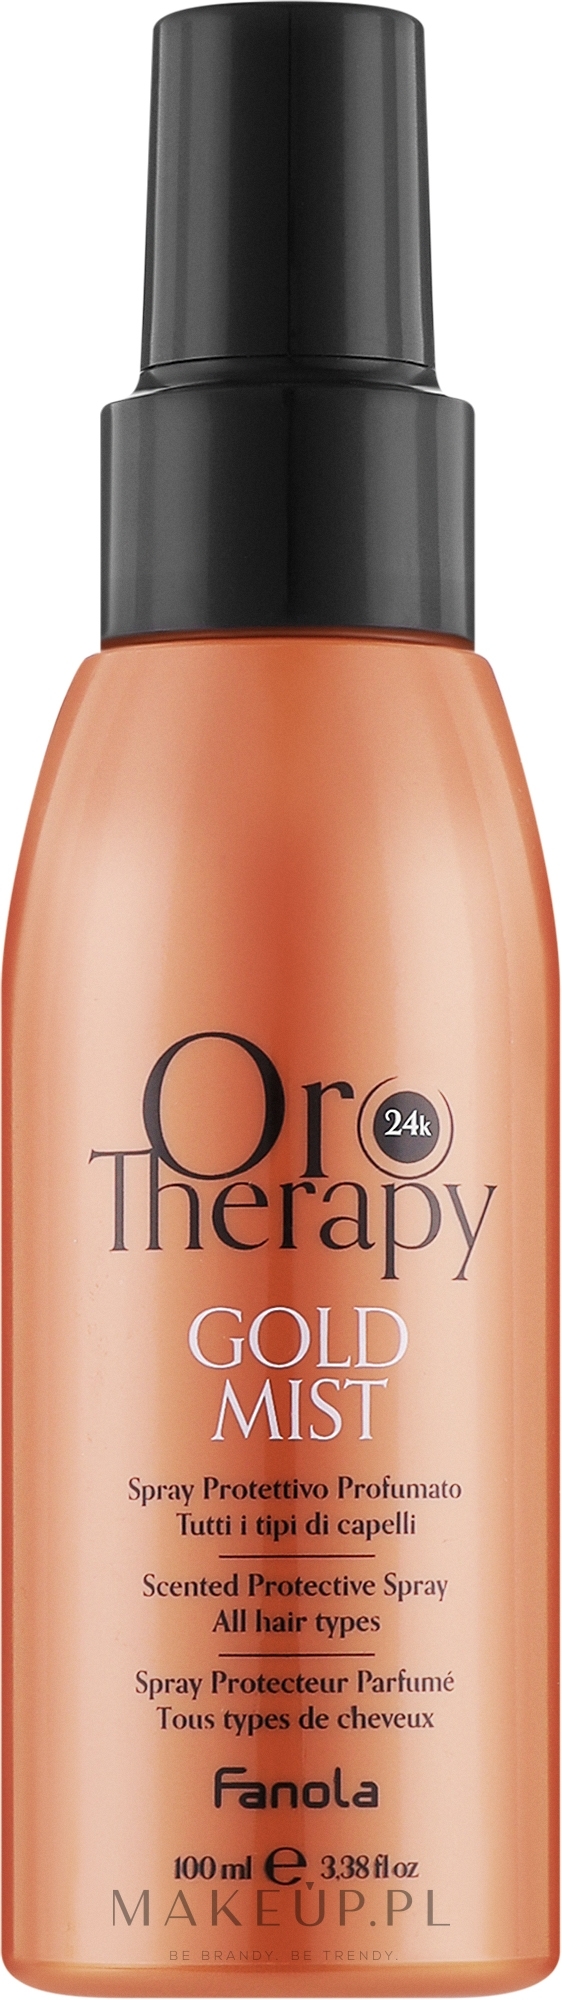 Lakier do włosów - Fanola Oro Therapy Gold Mist  — Zdjęcie 100 ml